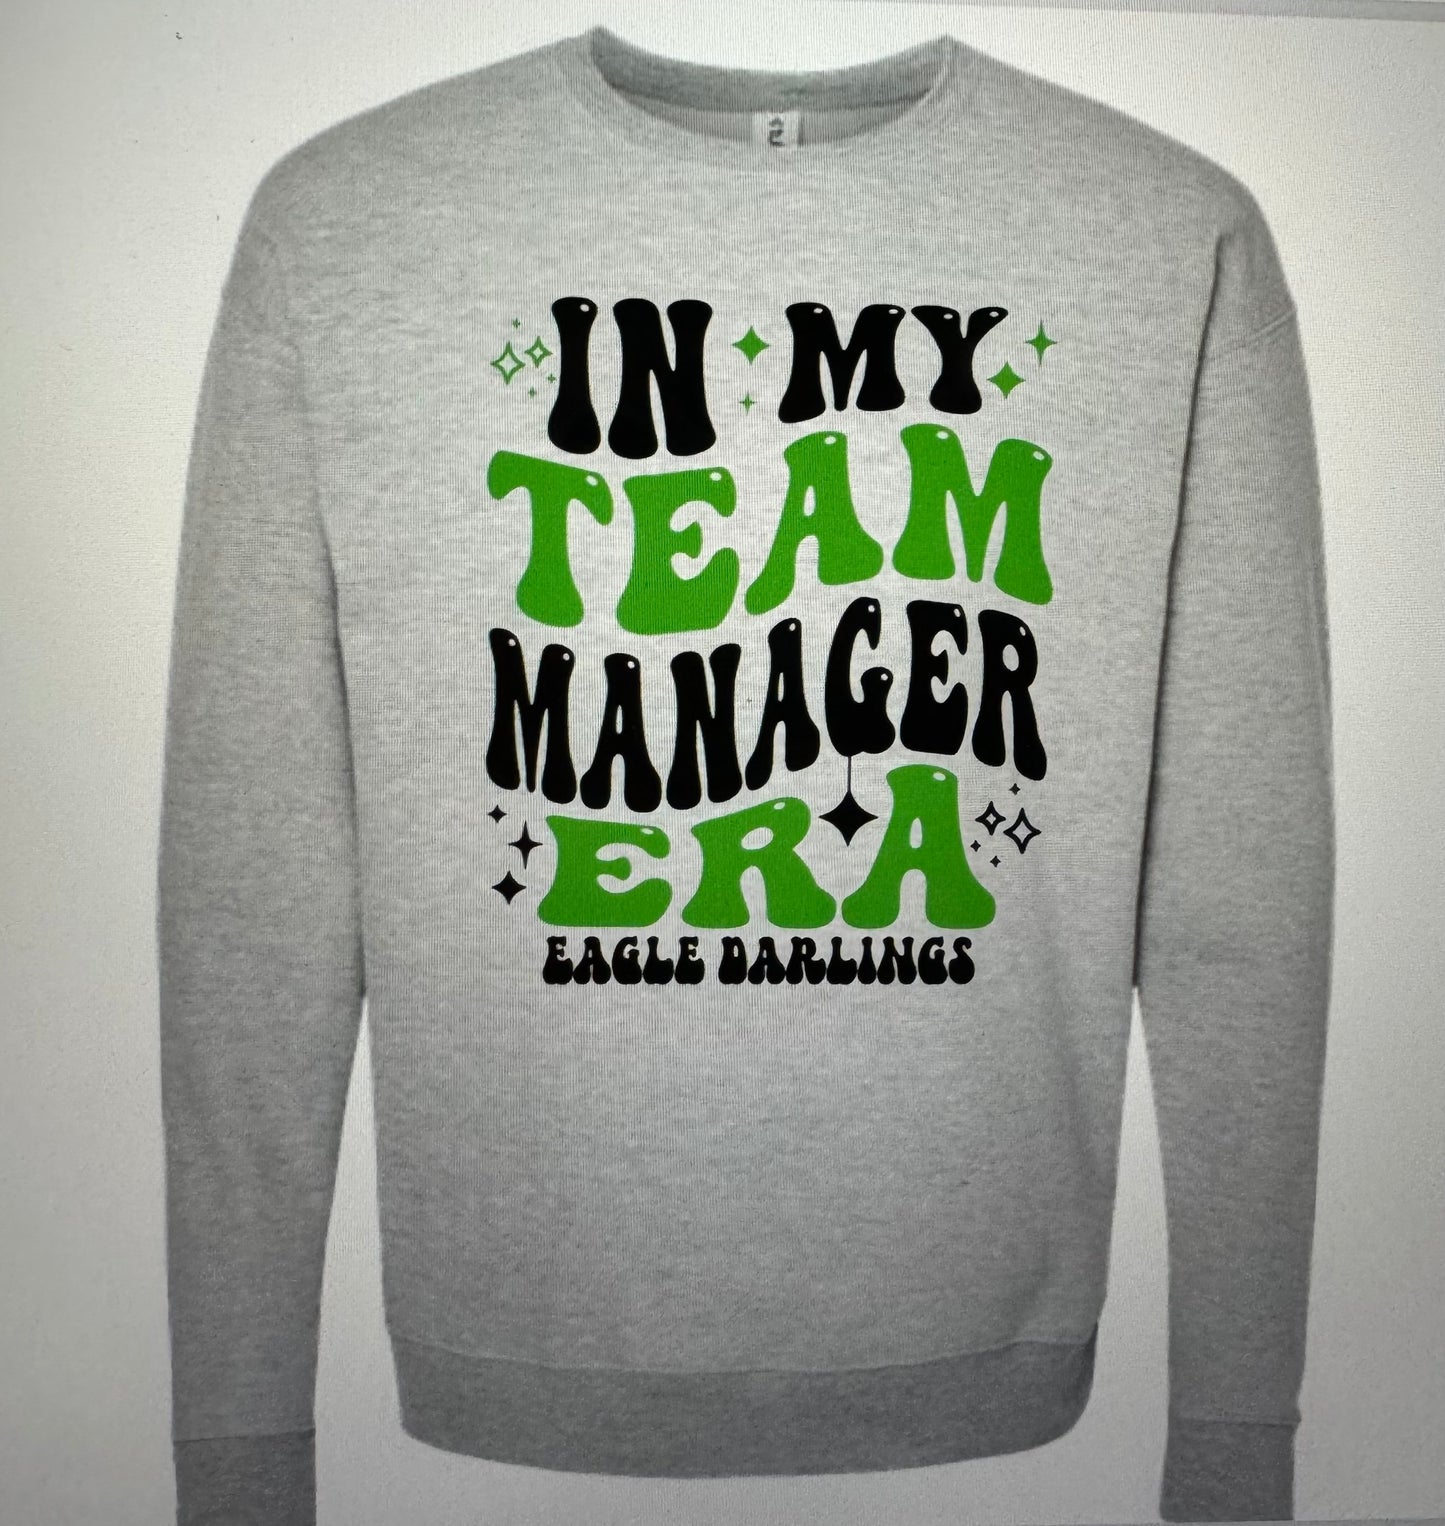 Team Manager Era